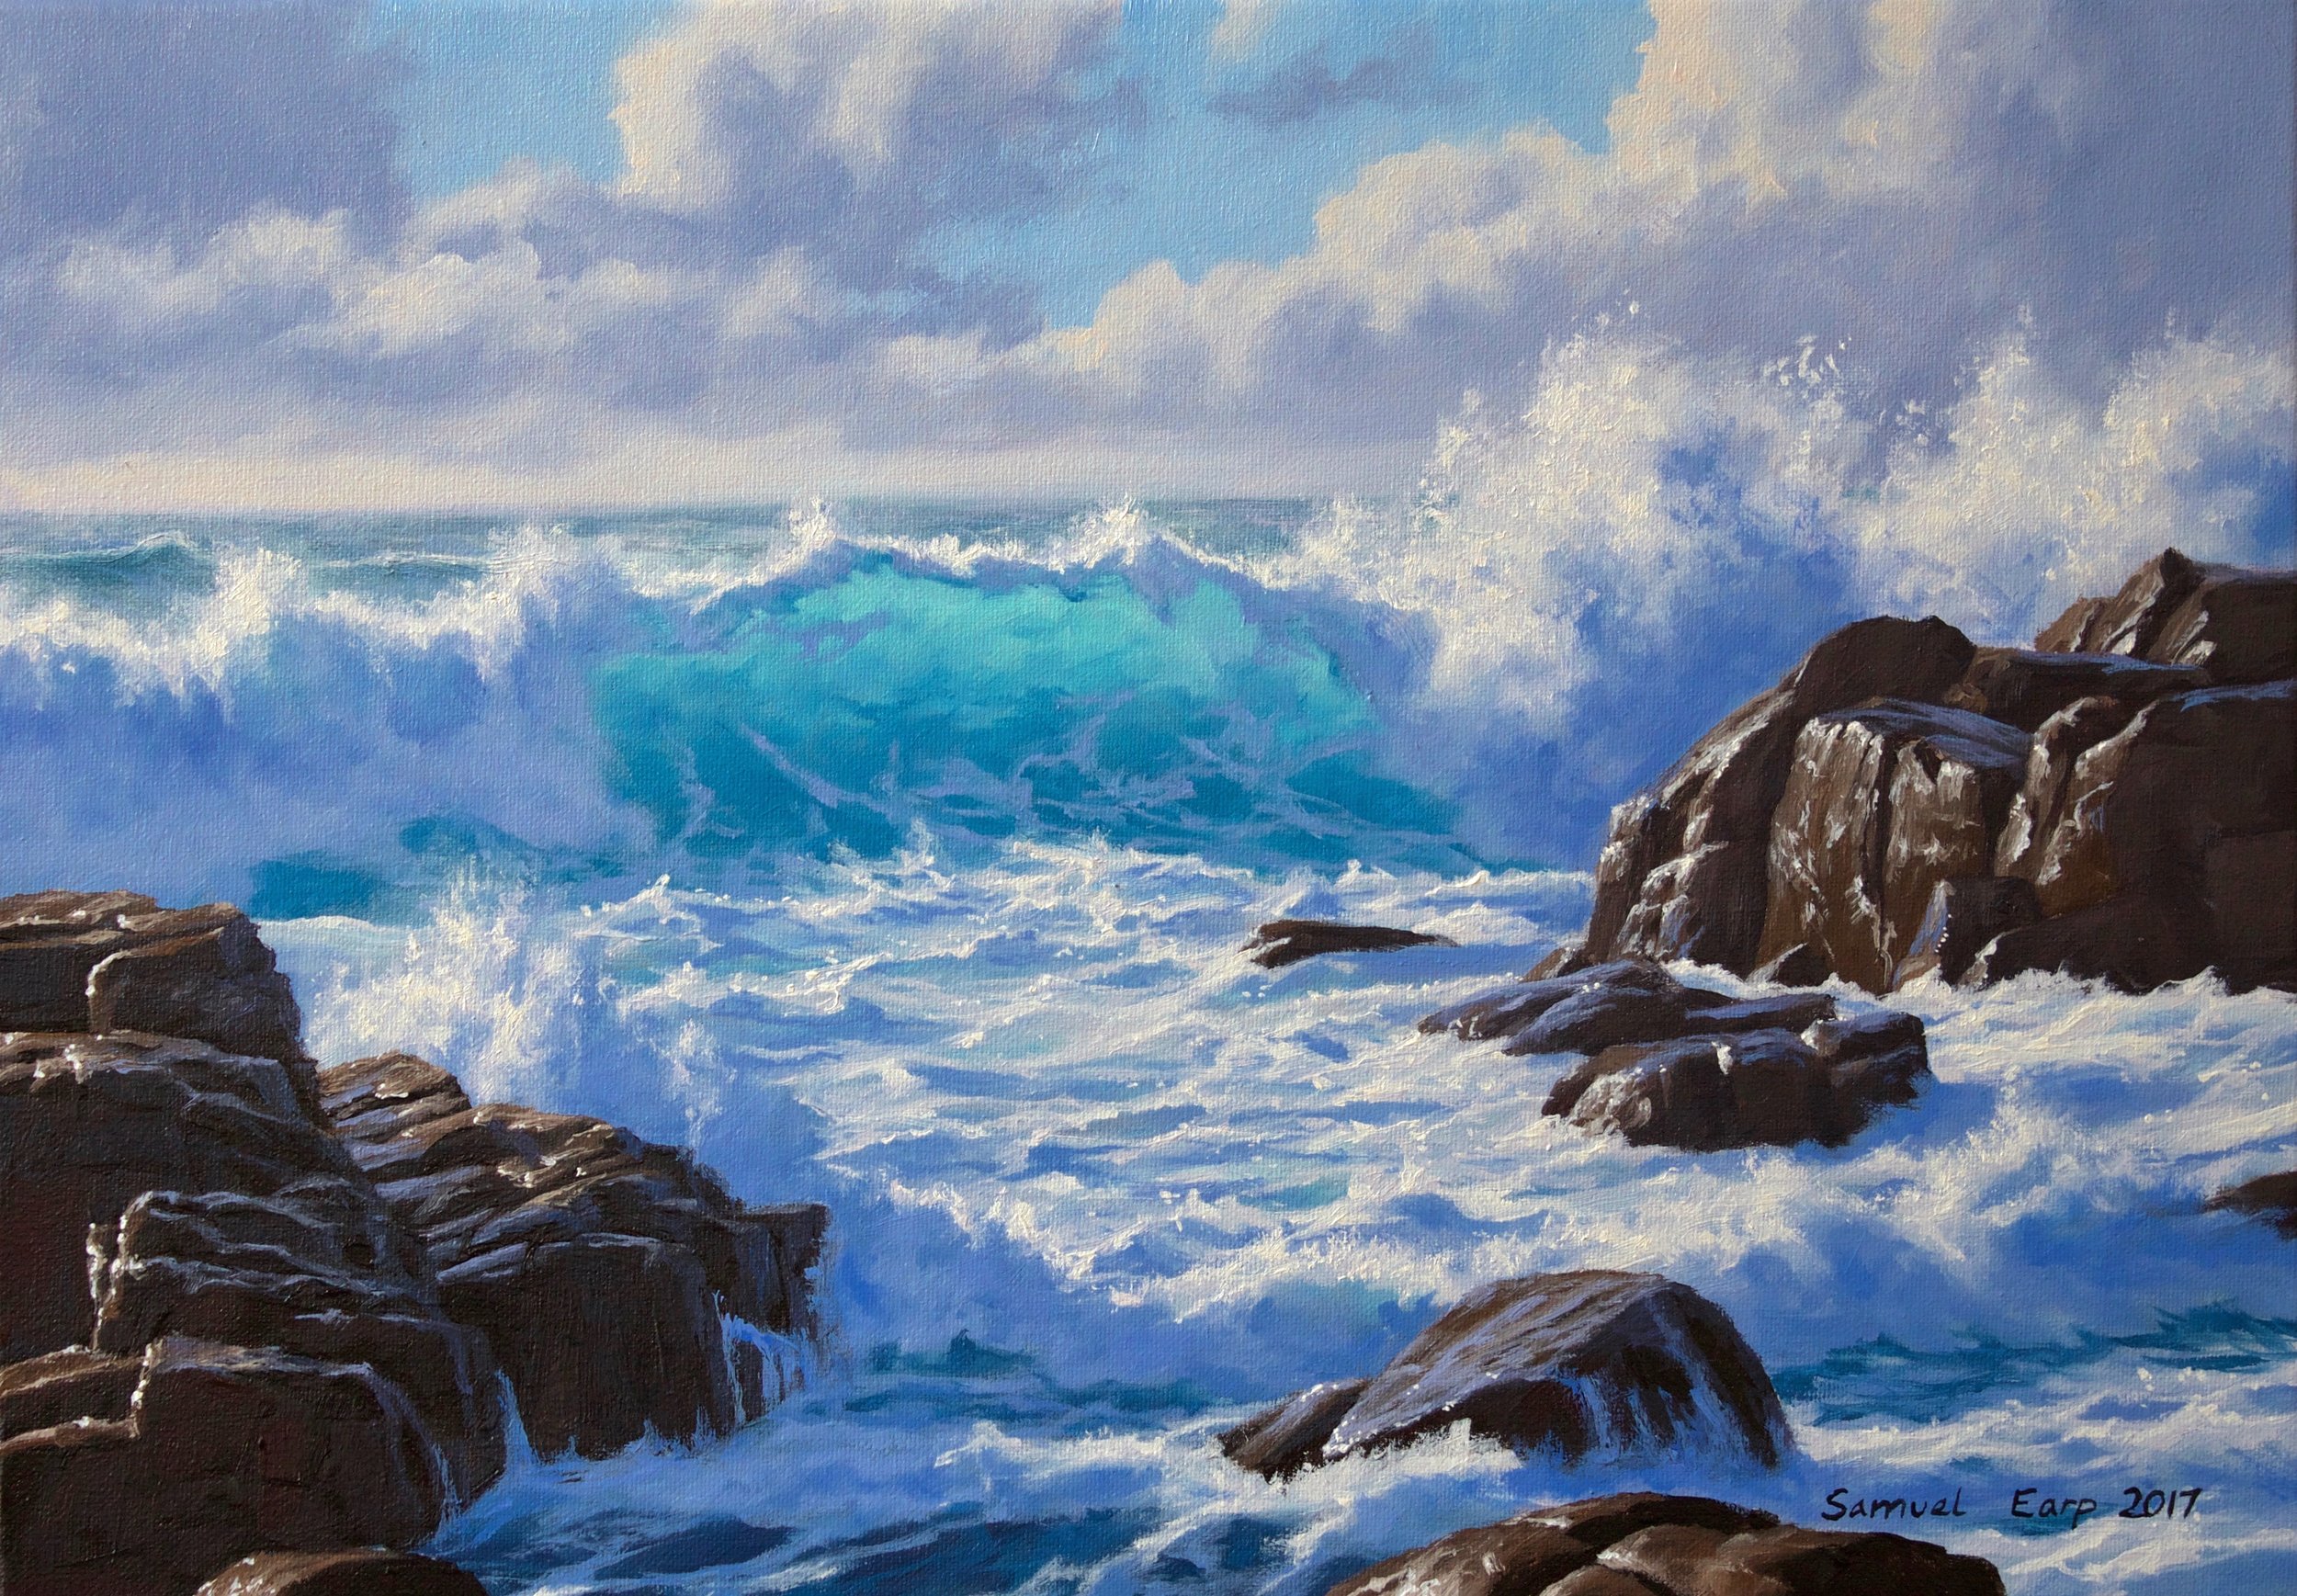 Wild Atlantic Ocean - Samuel Earp - Seascape Artist - oil painting.jpg